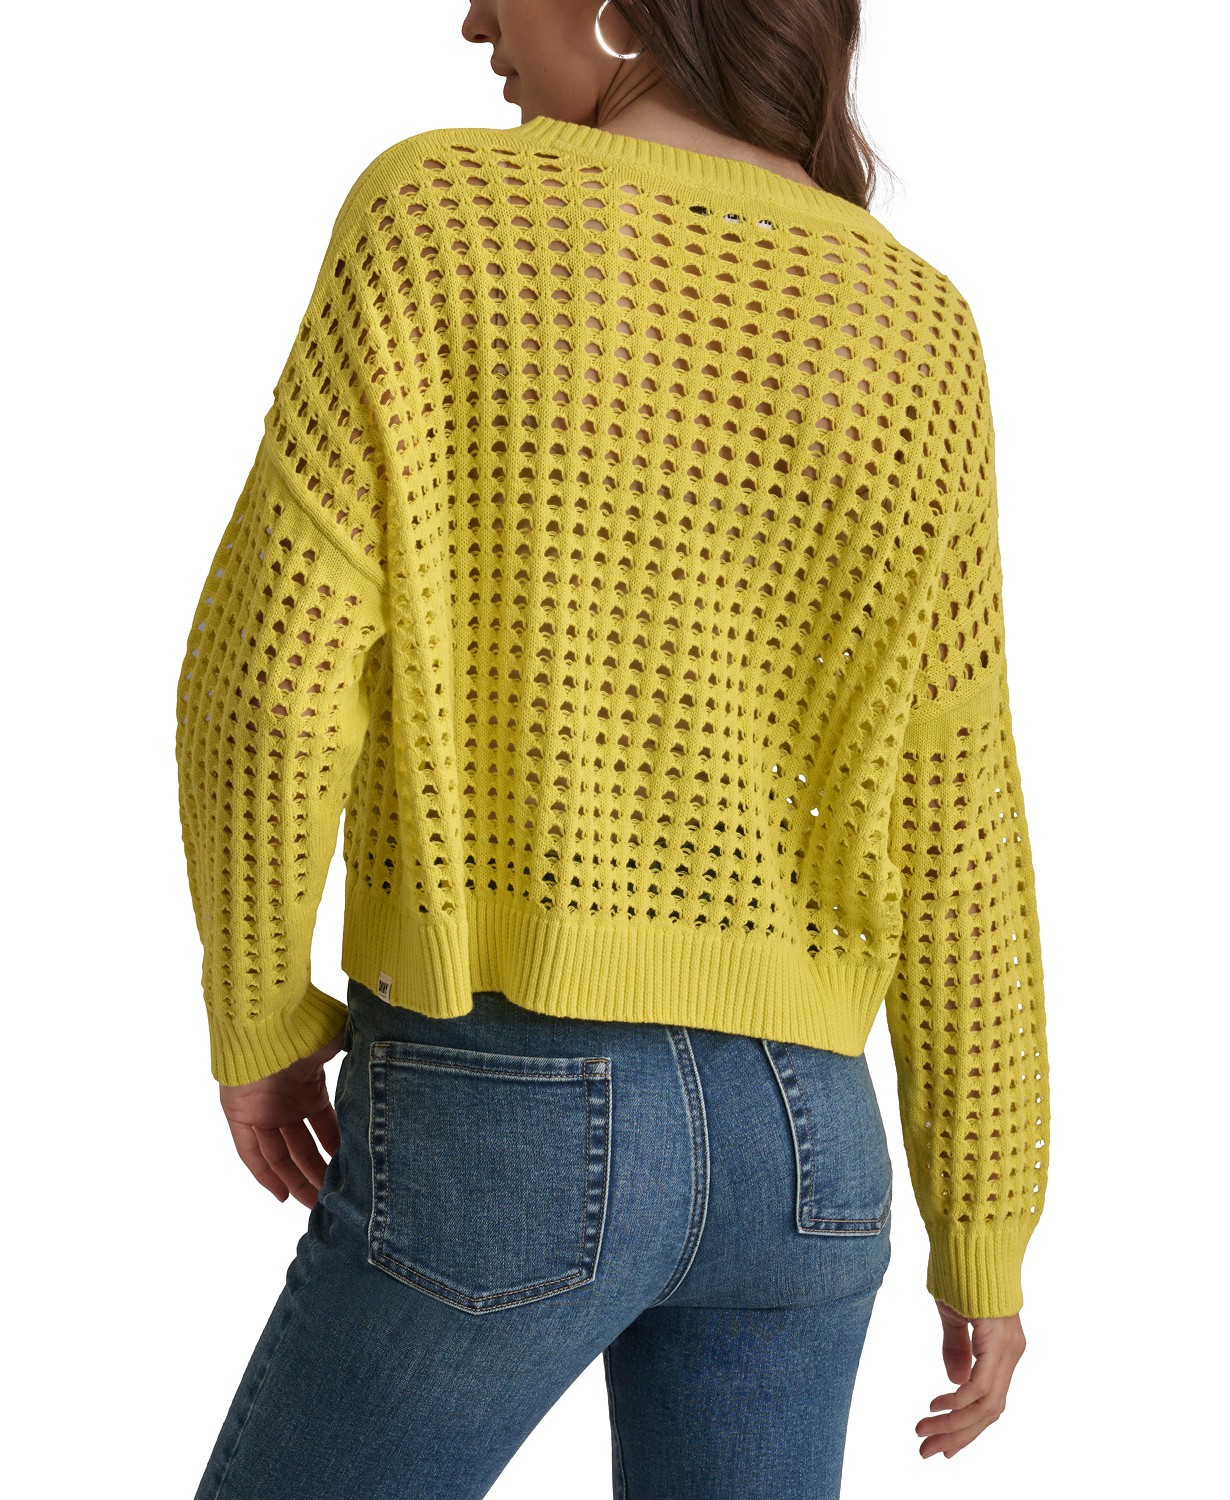 DKNY Womens V-Neck Open-Stitch Cotton Sweater